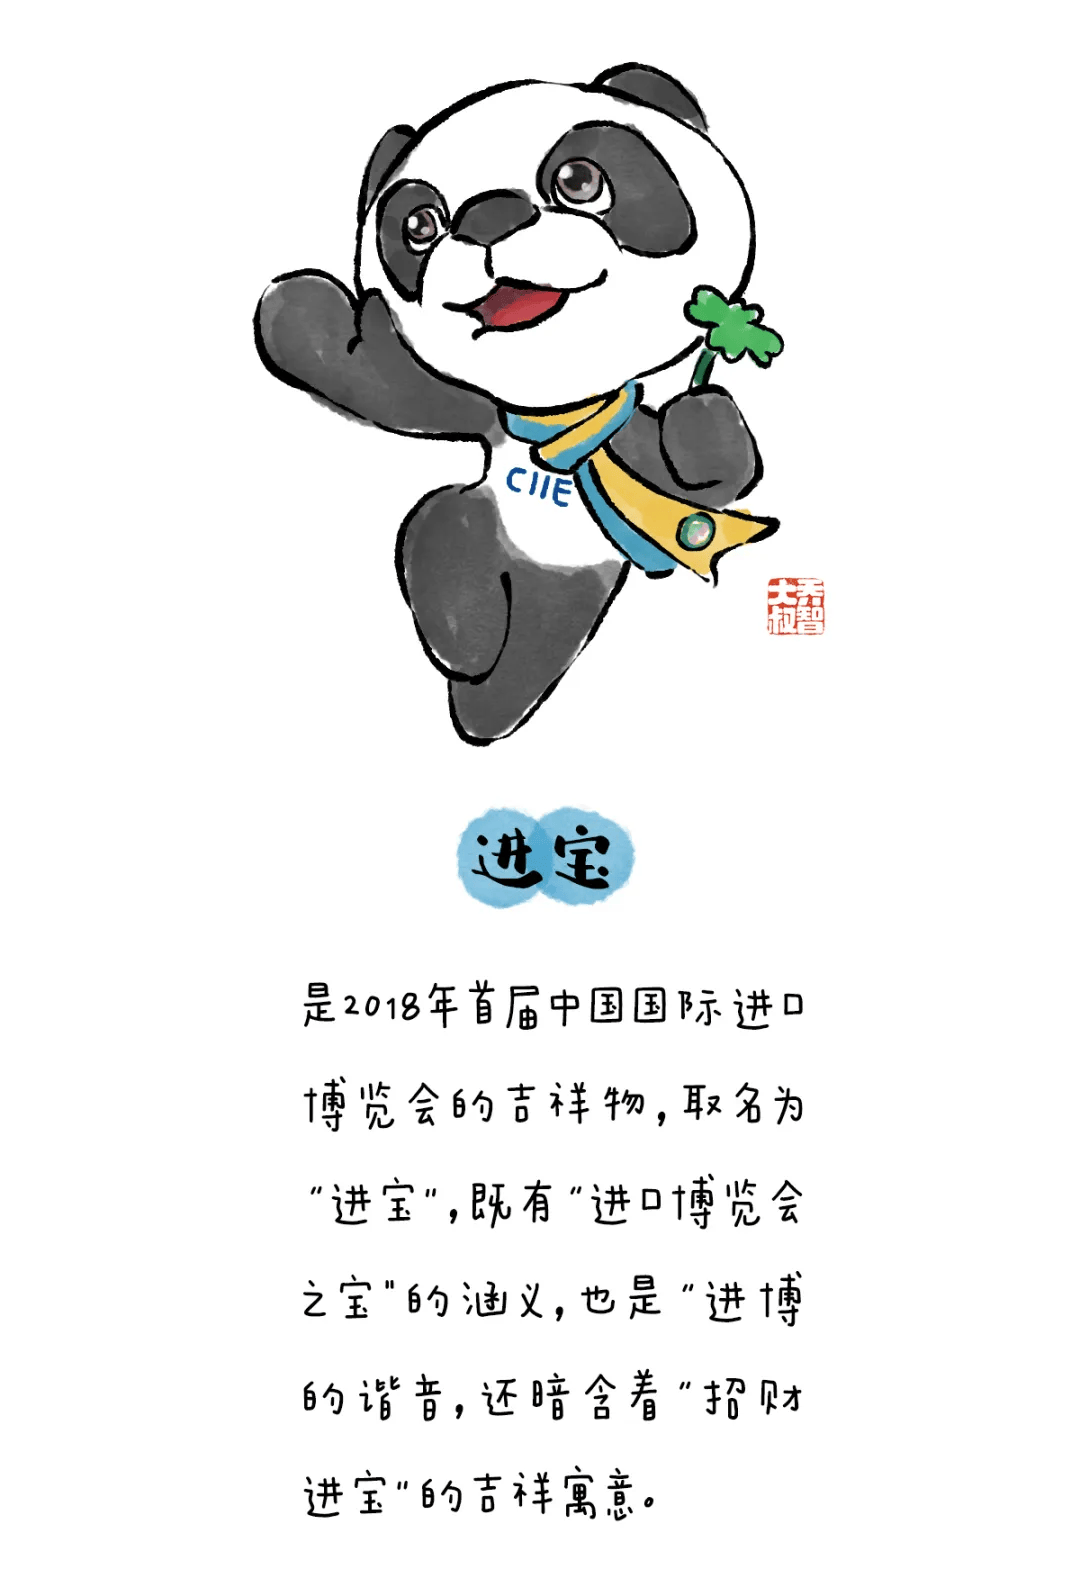 熊猫邮票图片简笔画图片